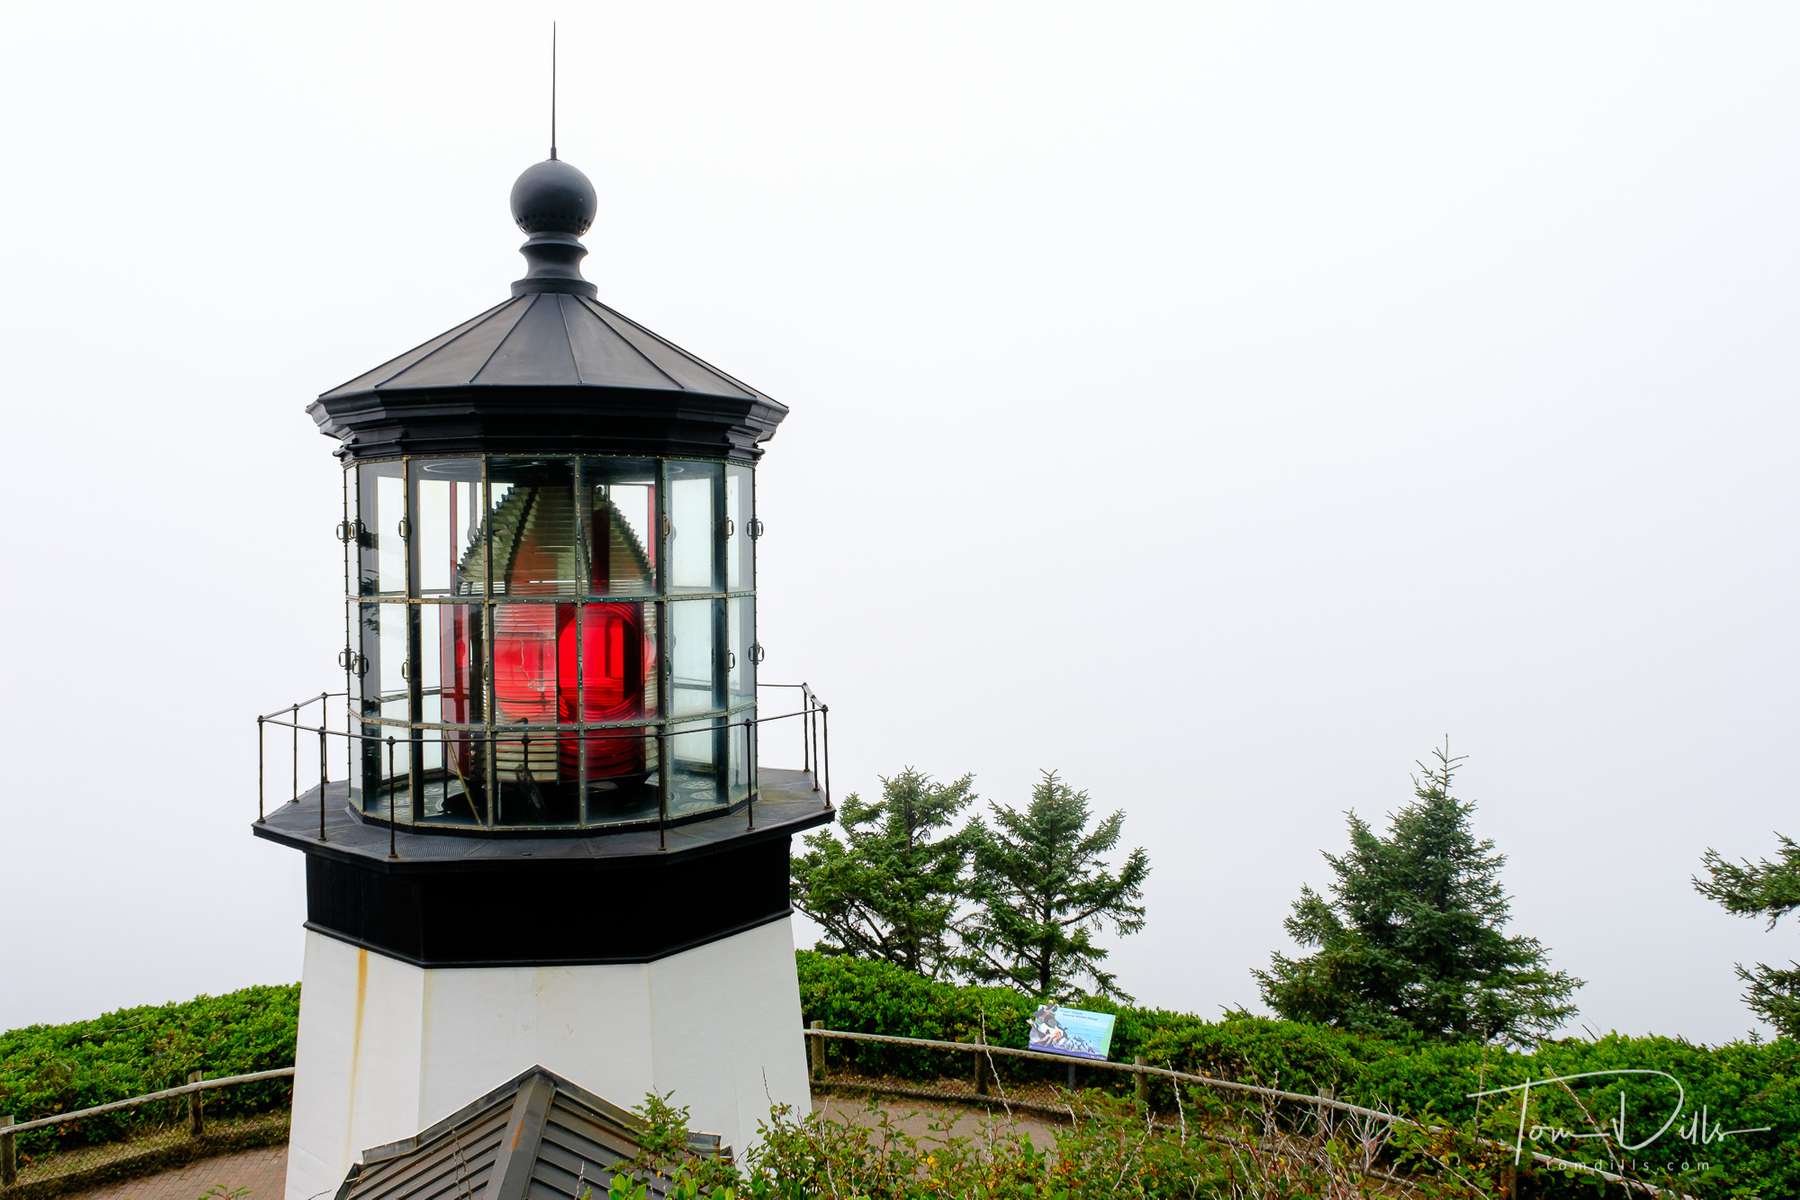 Cape Mears Lighthouse on Cape Mears, Oregon